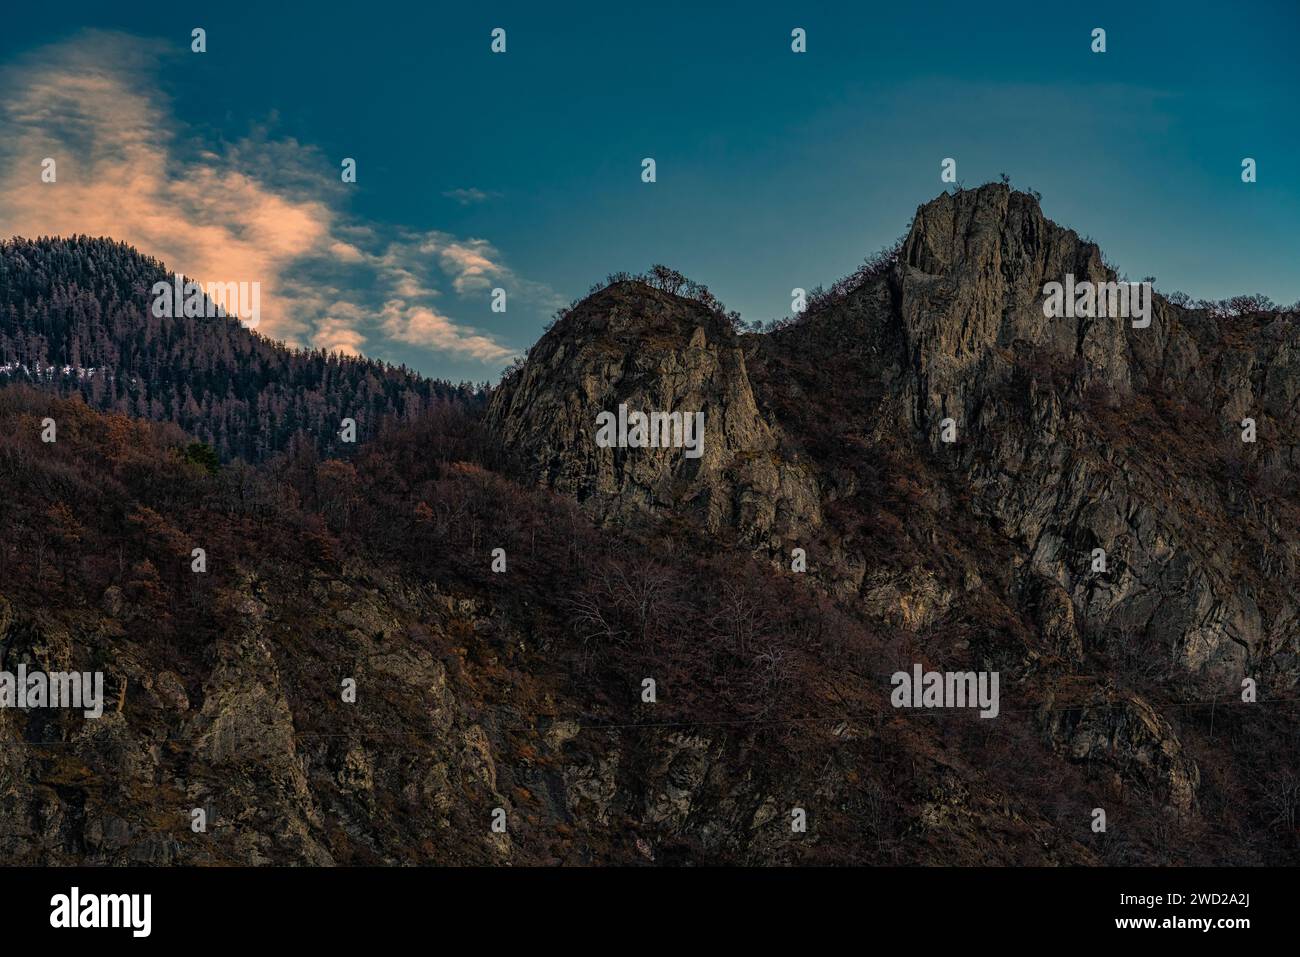 Paysage de sommets montagneux à la base des Alpes, illuminé par la lumière chaude de l'aube. France, Europe Banque D'Images